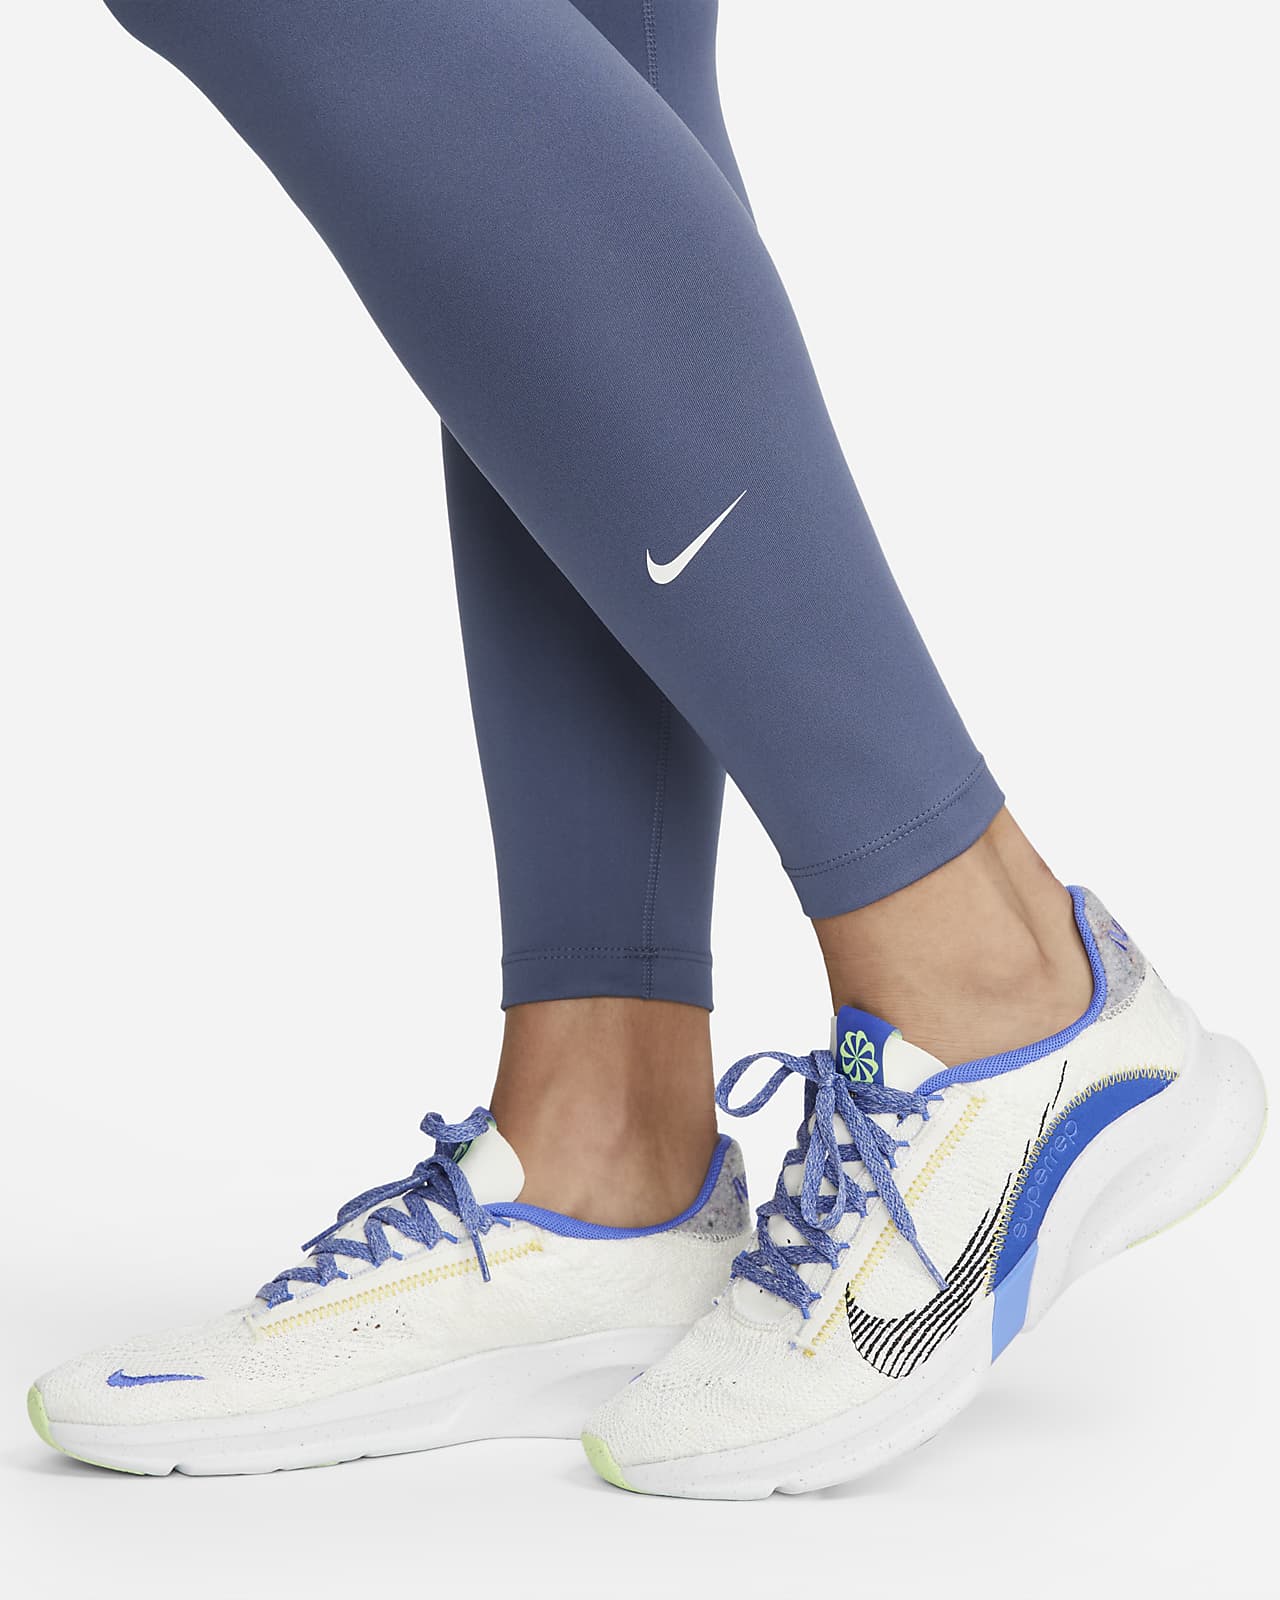 Promo Nike Celana Legging NIKE Essential High-Rise Legging Women [CZ8529-010]  Sarang Sepatu - Black M Diskon 20% di Seller Sarangsepatu Official Store -  Kembangan Selatan, Kota Jakarta Barat